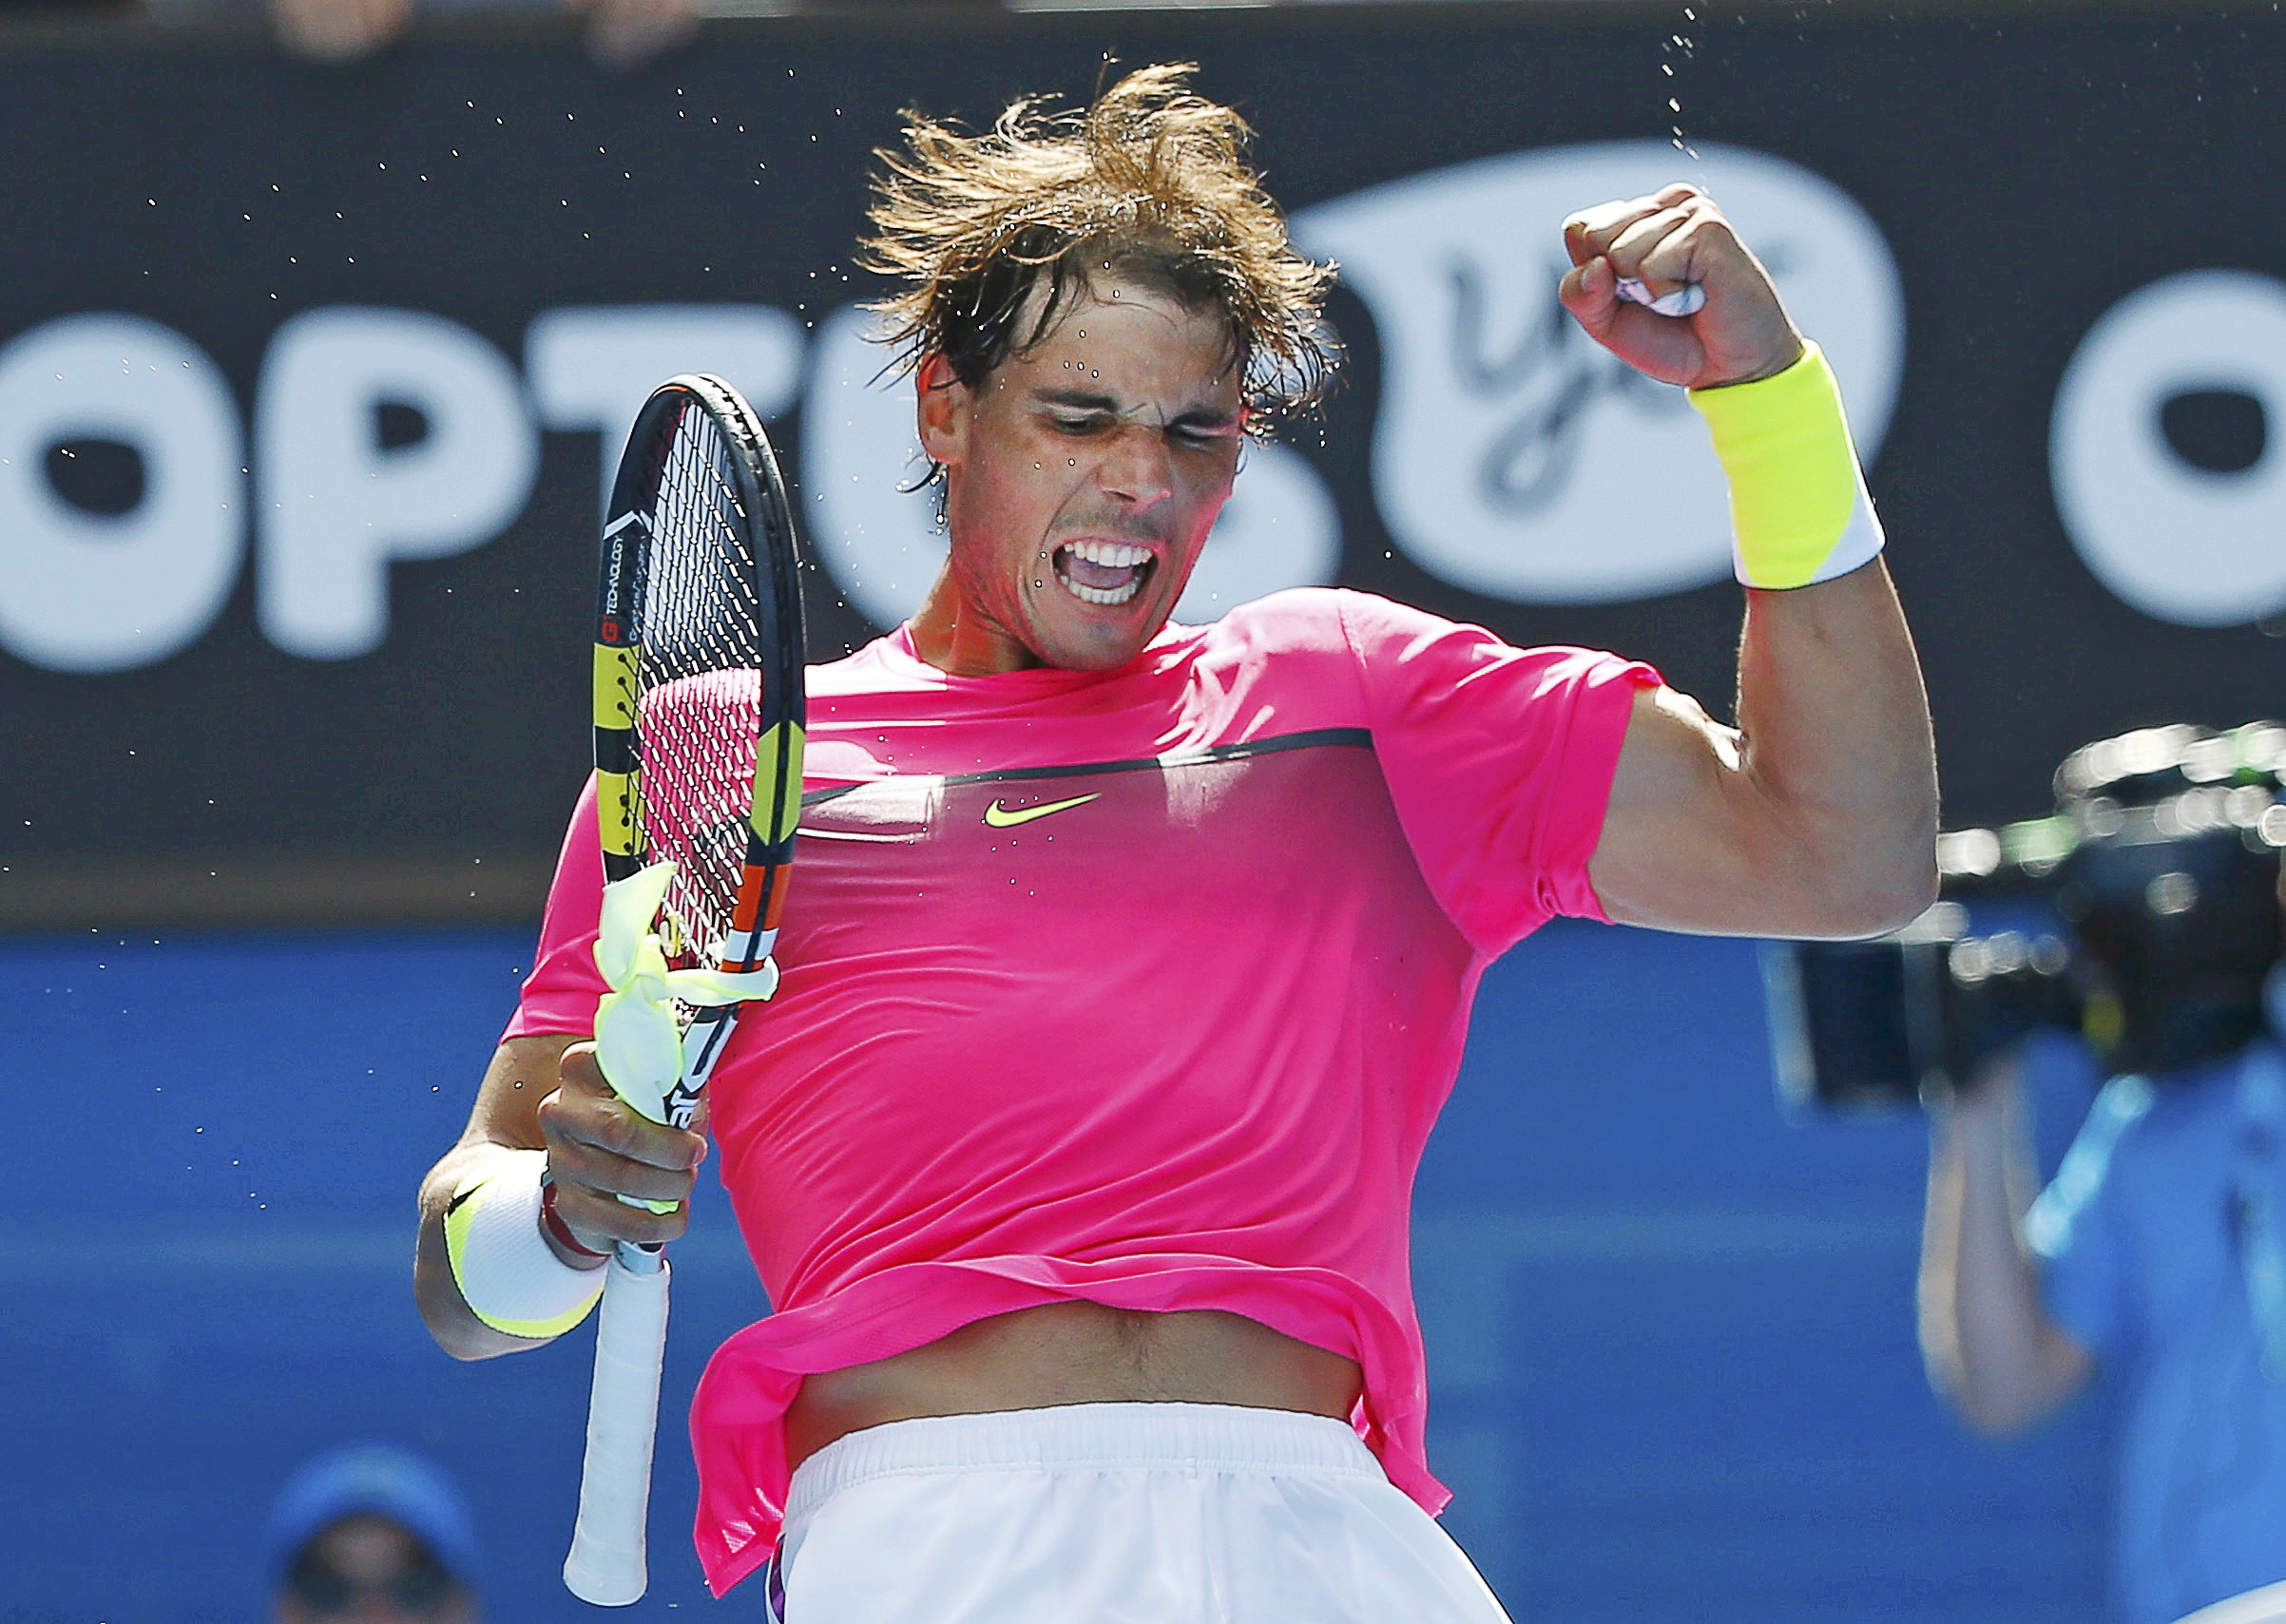 Rafael Nadal vs Mikhail Youzhny Open de Australia 2015 Pict. 17